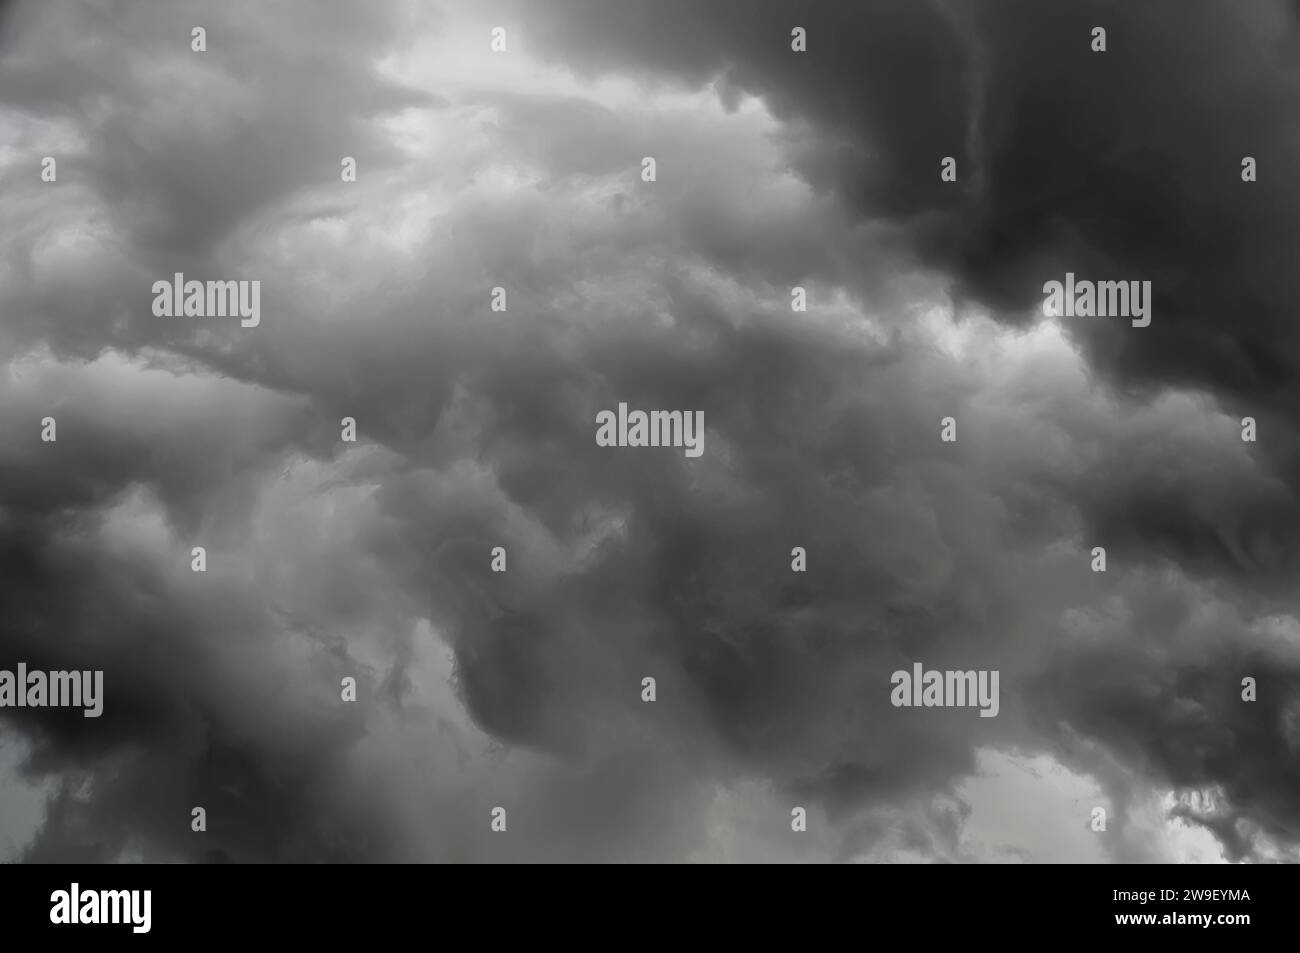 Nuvole oscure e inquietanti incombono sul paesaggio, minacciando una tempesta imminente. Foto Stock